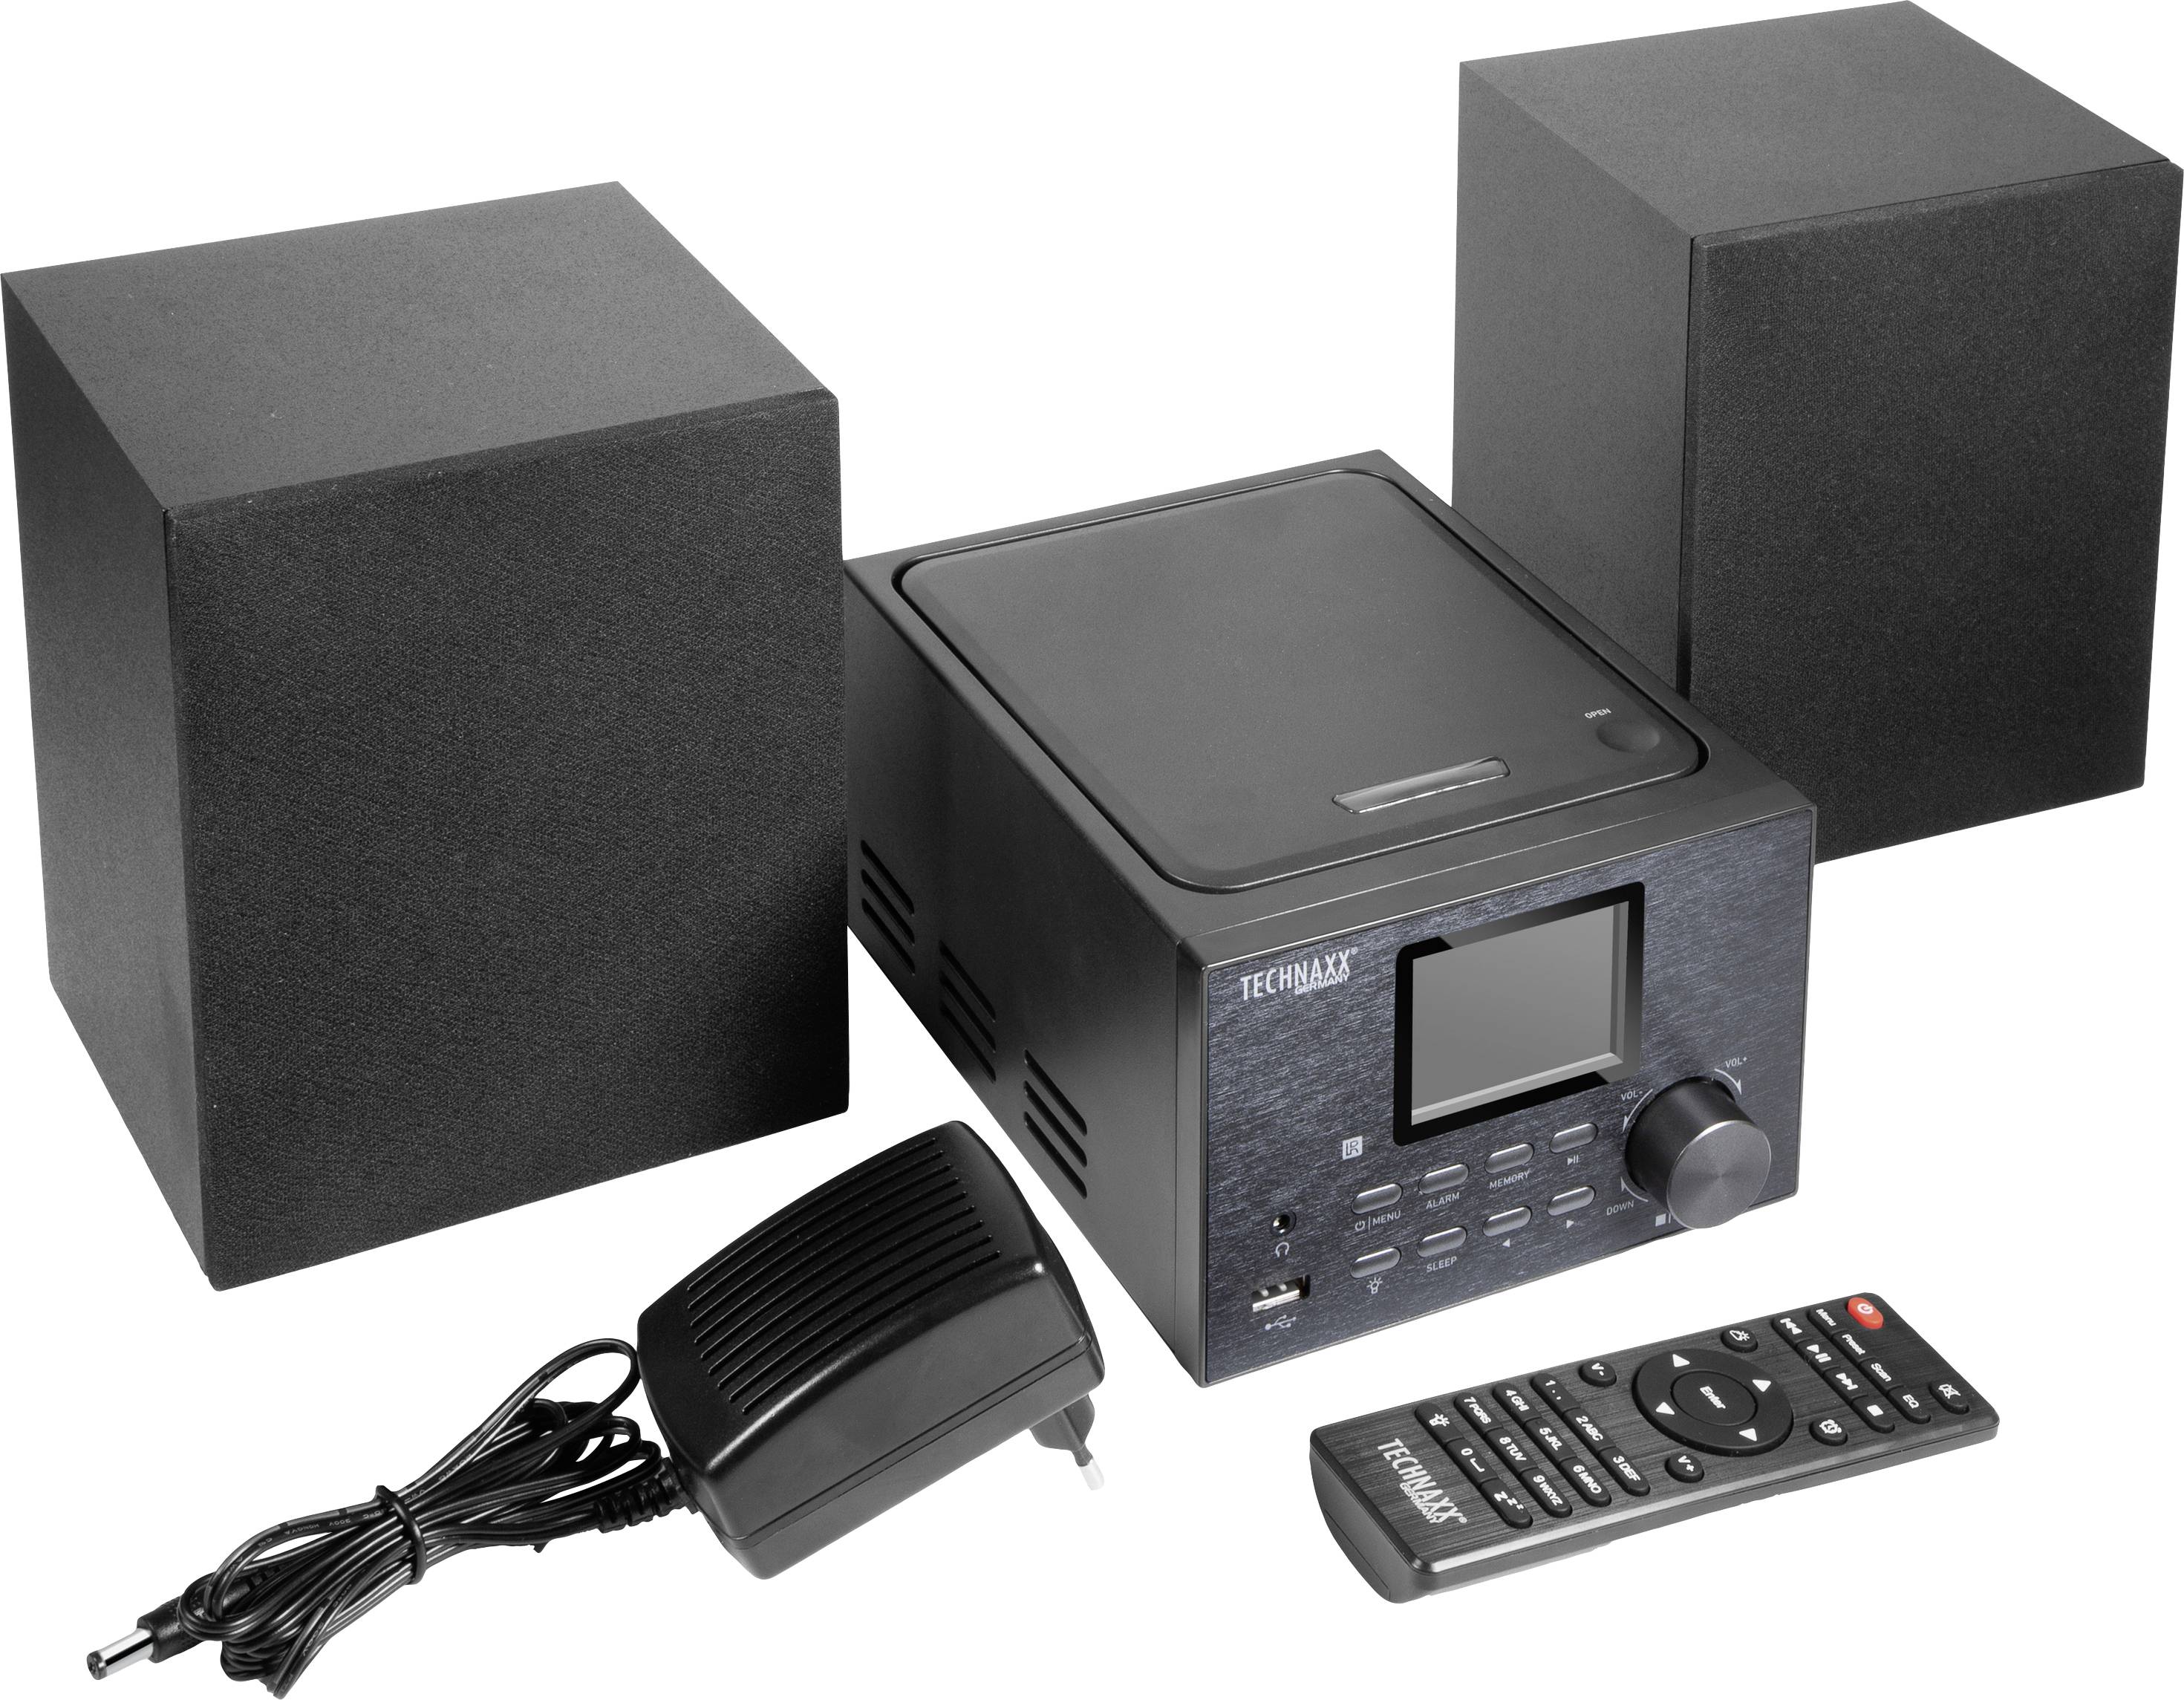 TECHNAXX TX-178 Internet CD-Radio DAB+, FM, Internet CD, Bluetooth®, AUX, R